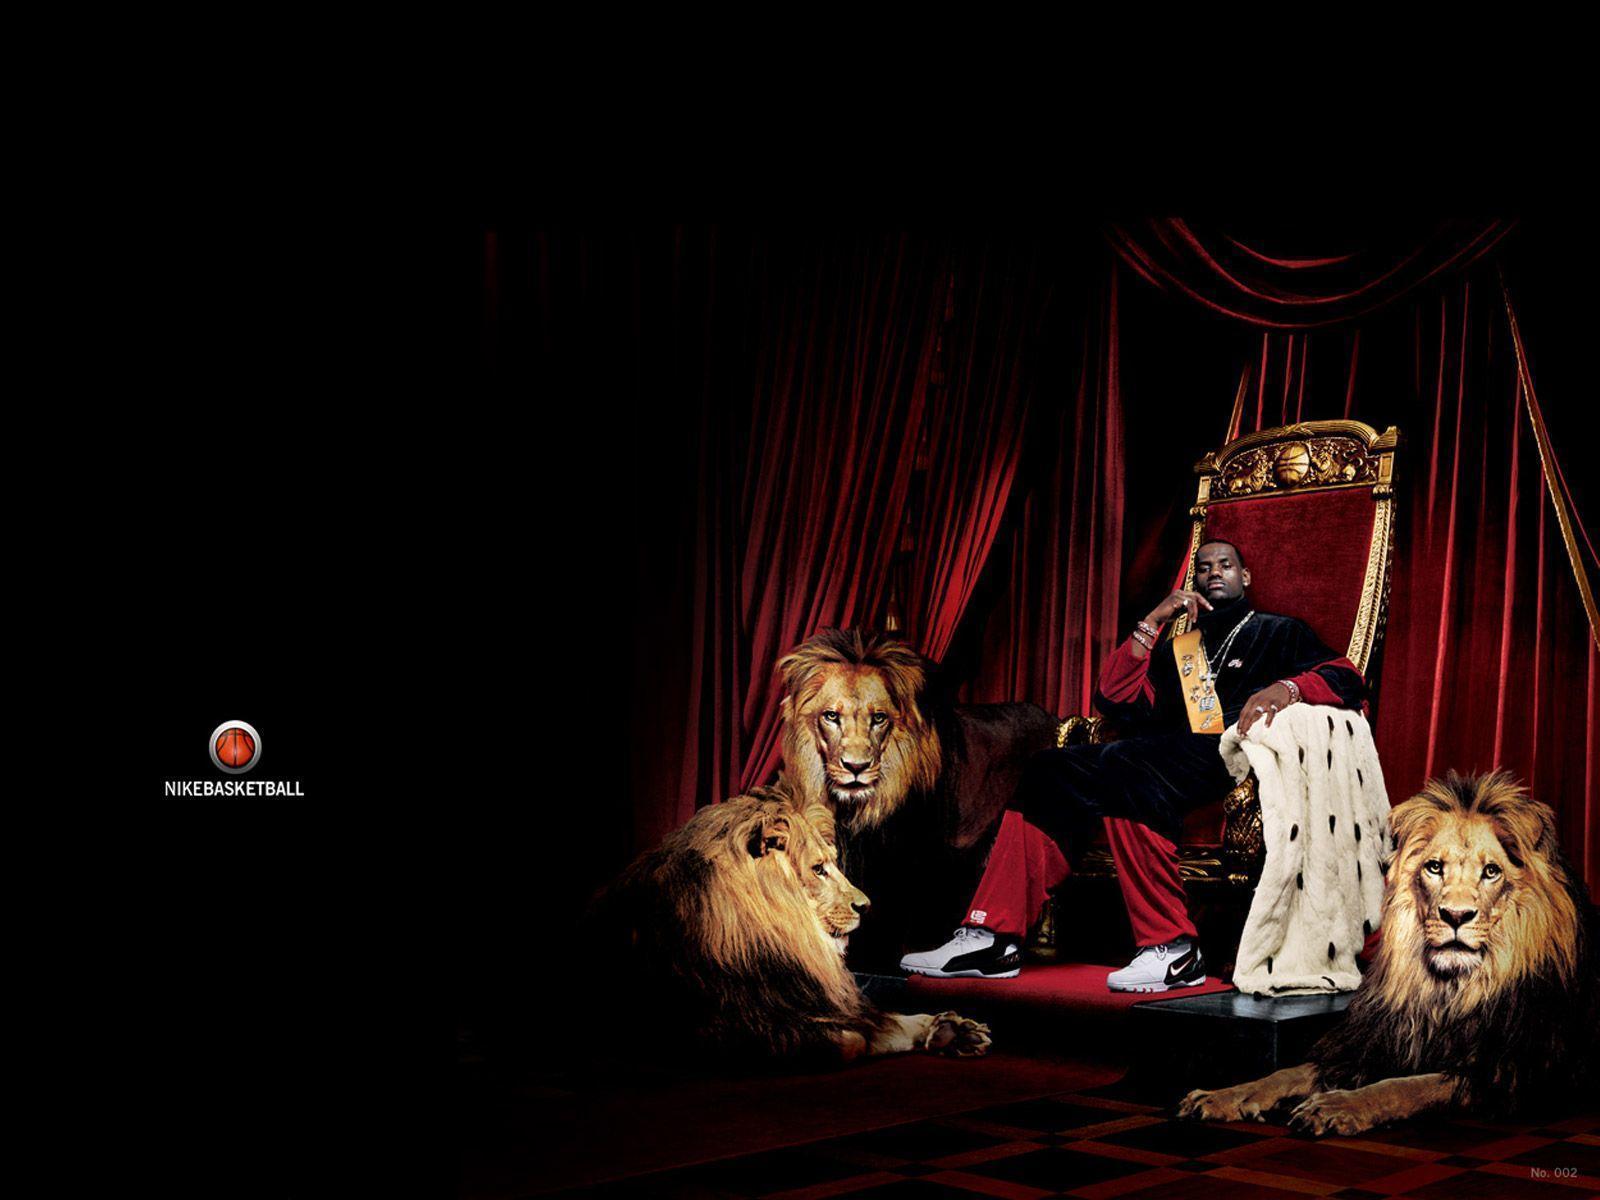 King LeBron James Wallpaper. Basketball Wallpaper at